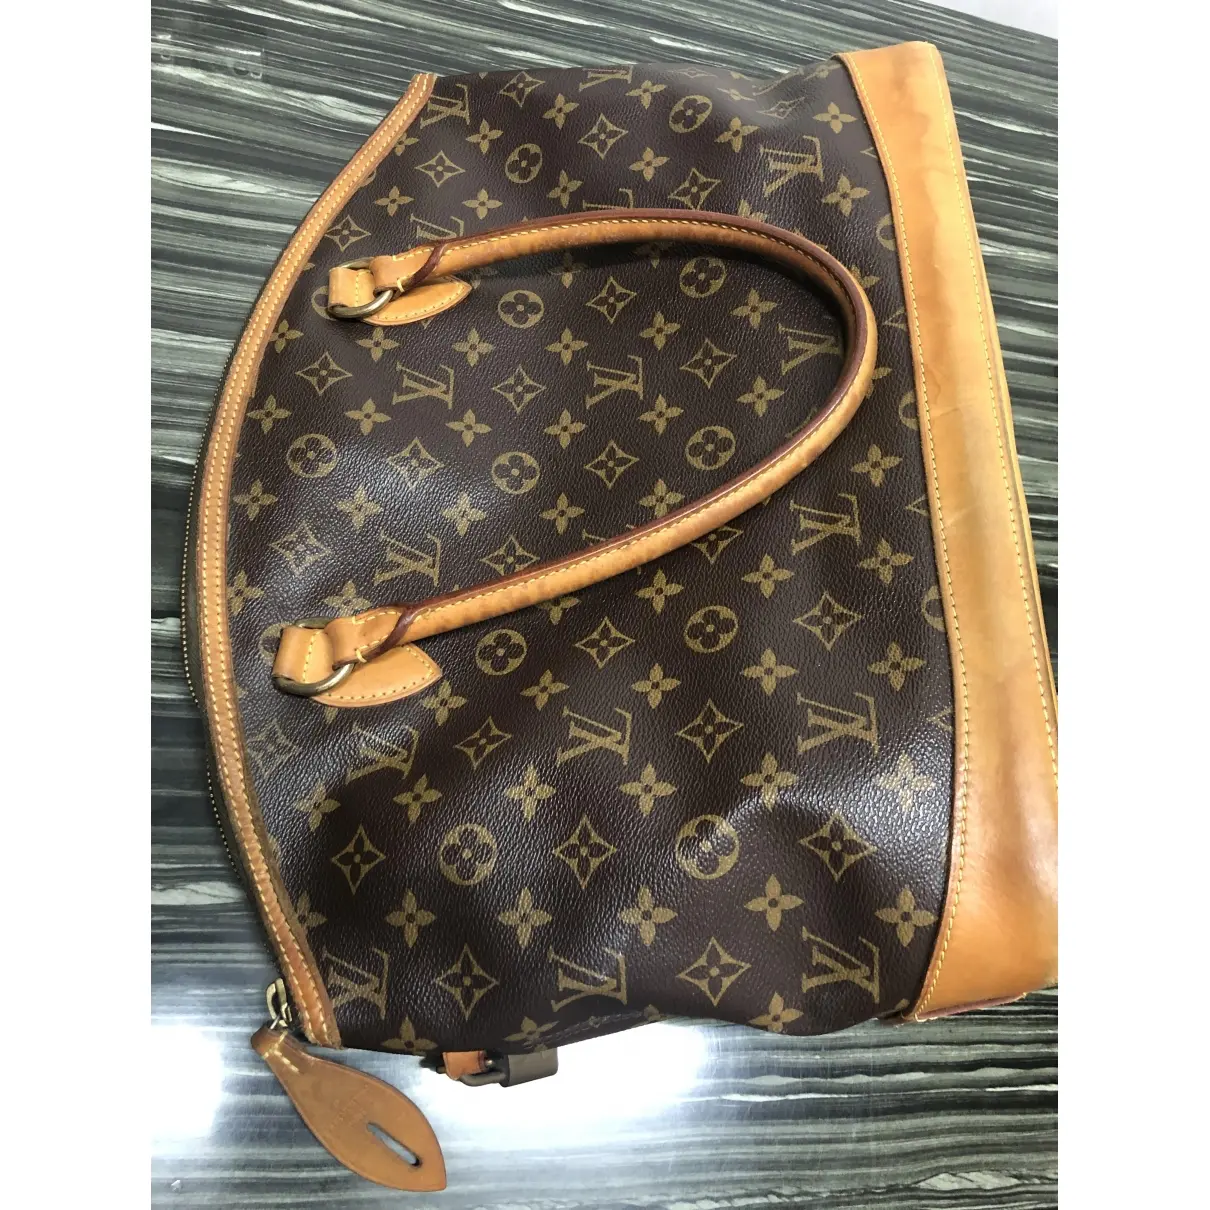 Buy Louis Vuitton Cloth handbag online - Vintage